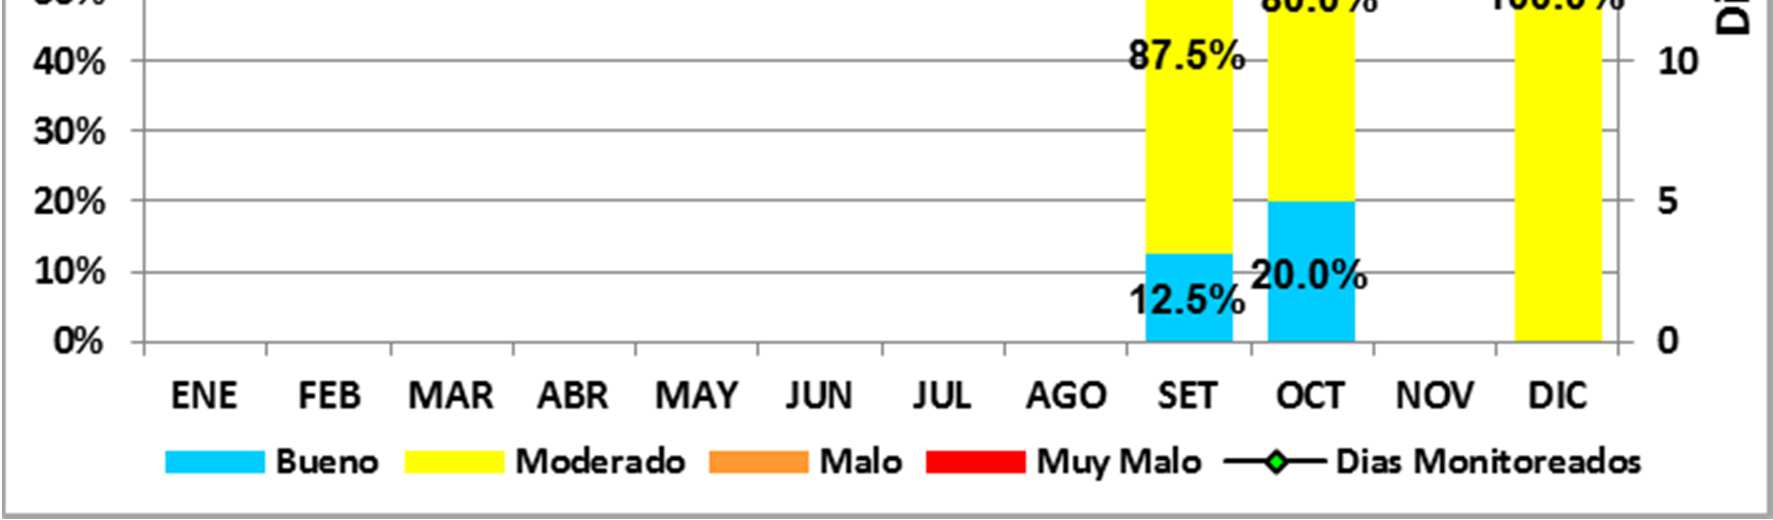 Figura 23 - Distribución porcentual de estados de calidad del aire con respecto al PM 10 La figura 24 muestra la evolución de la concentración media diaria del PM 10 en las estaciones del SENAMHI,